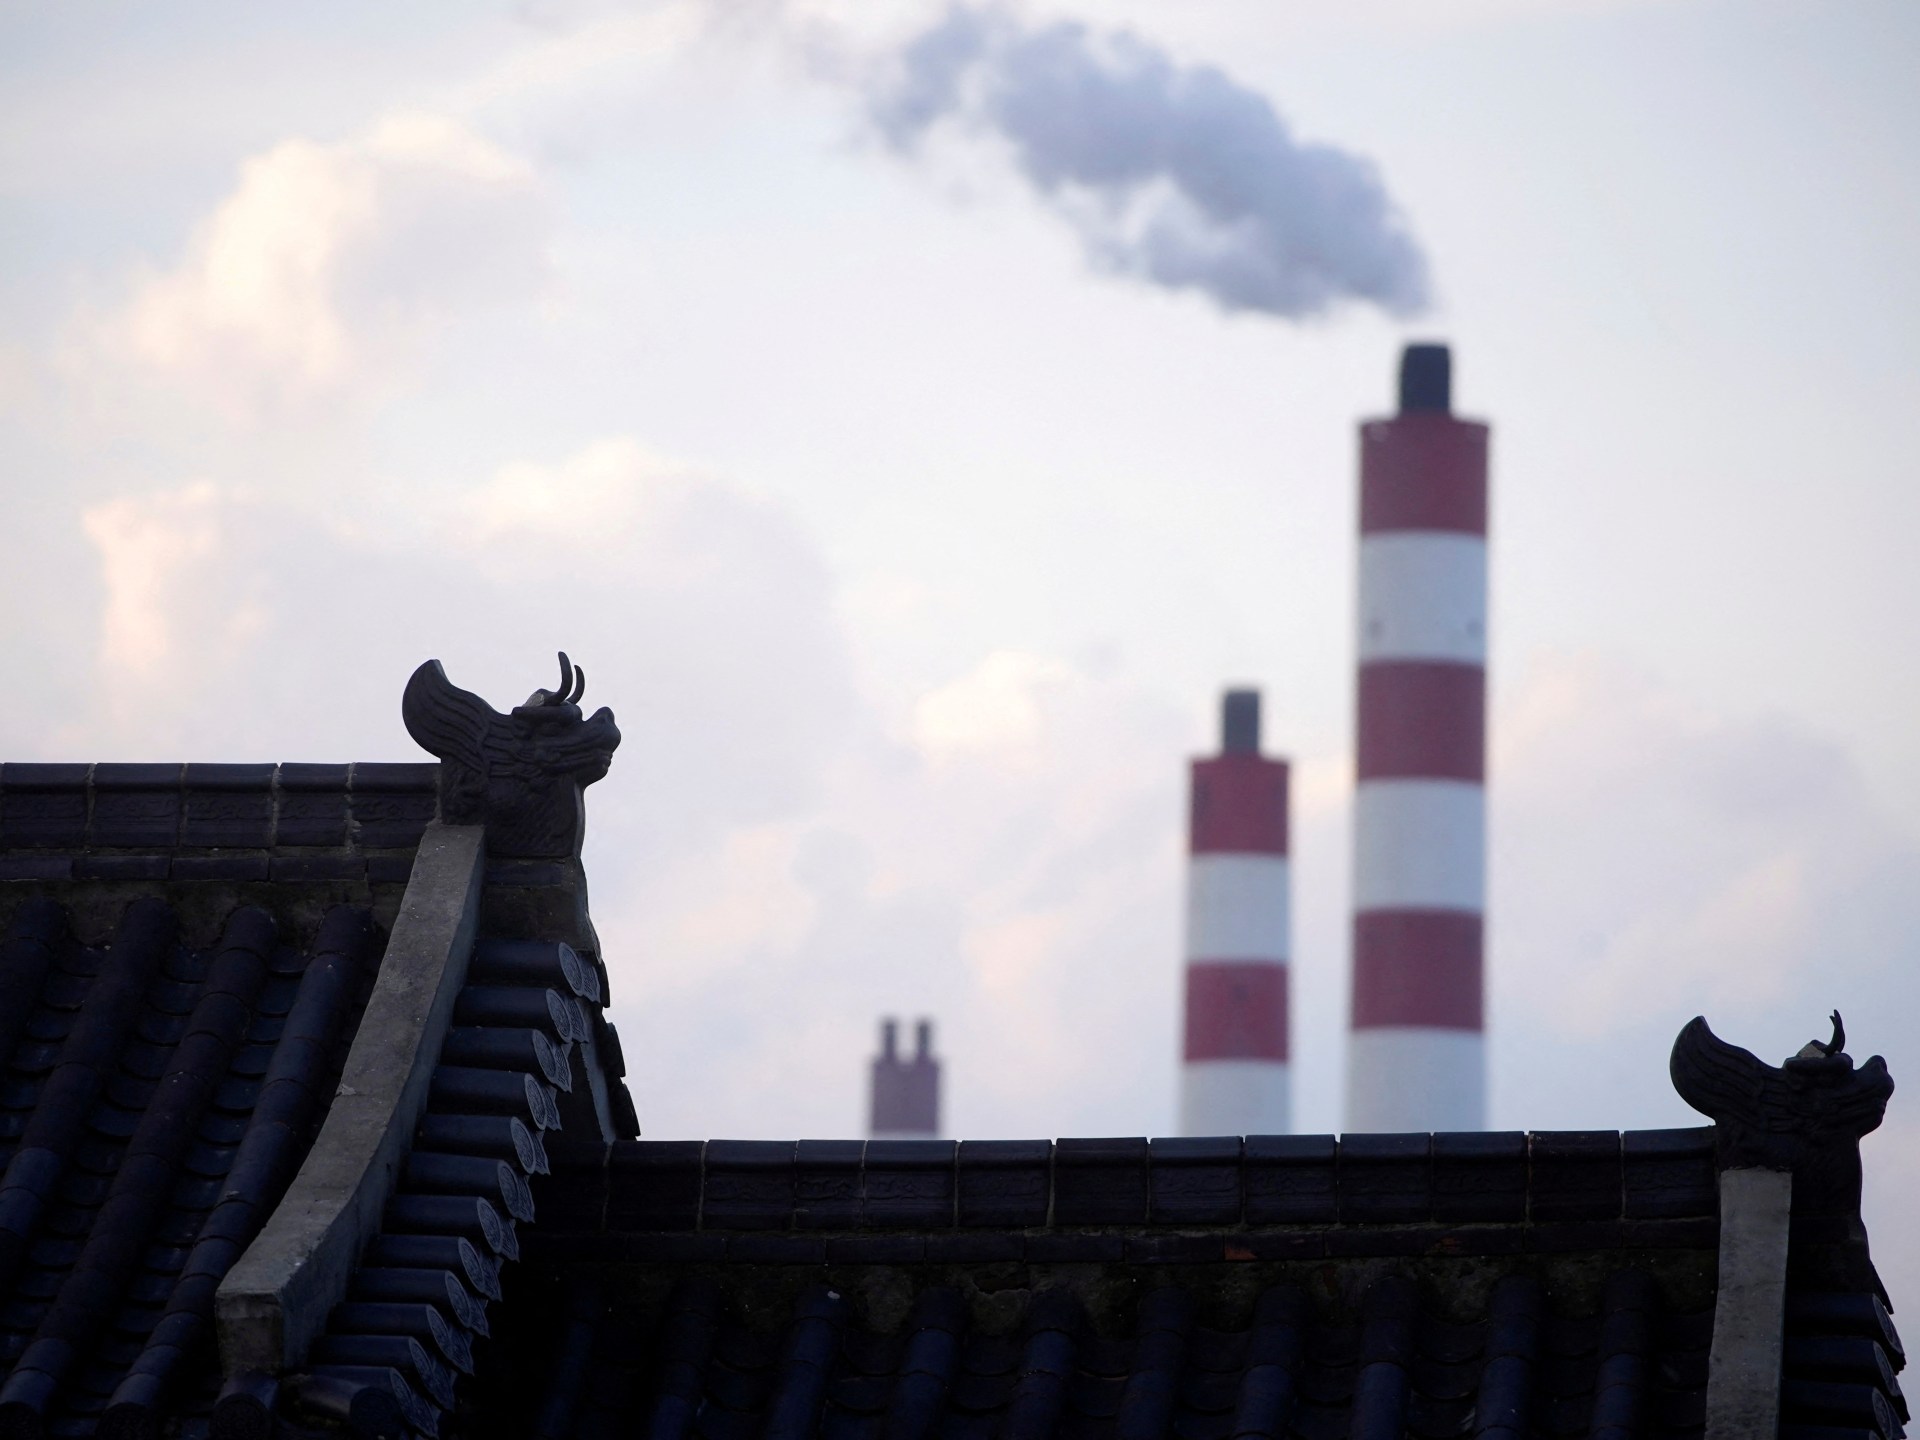 China setujui ledakan batu bara meski ada janji emisi: Greenpeace |  Iklim